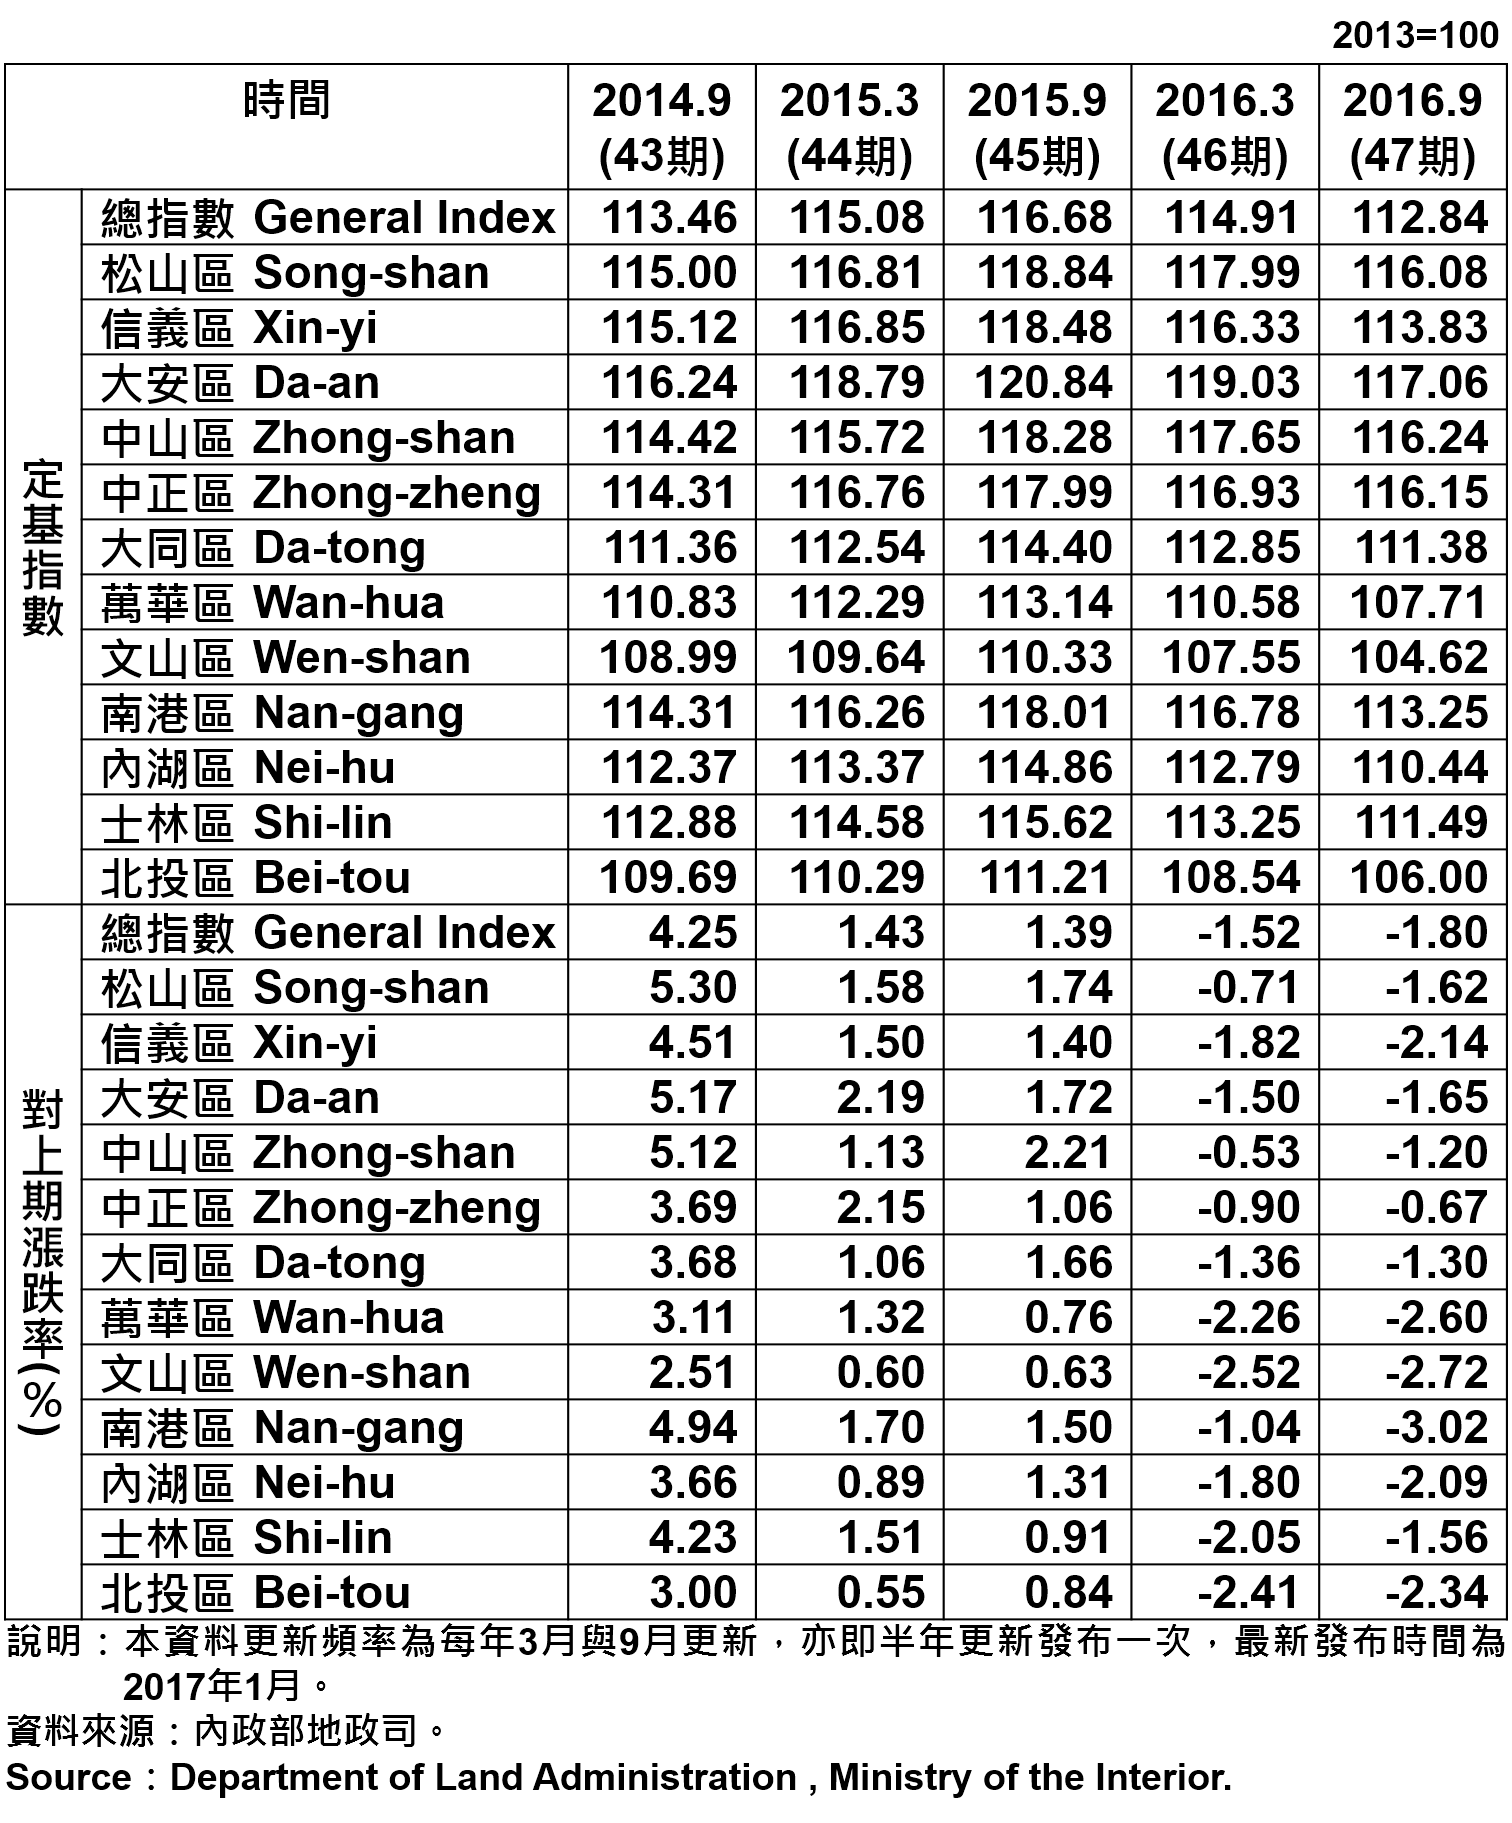 表1、臺北市都市地價指數分區表 Taipei's Urban Land Price Indexes by Districts